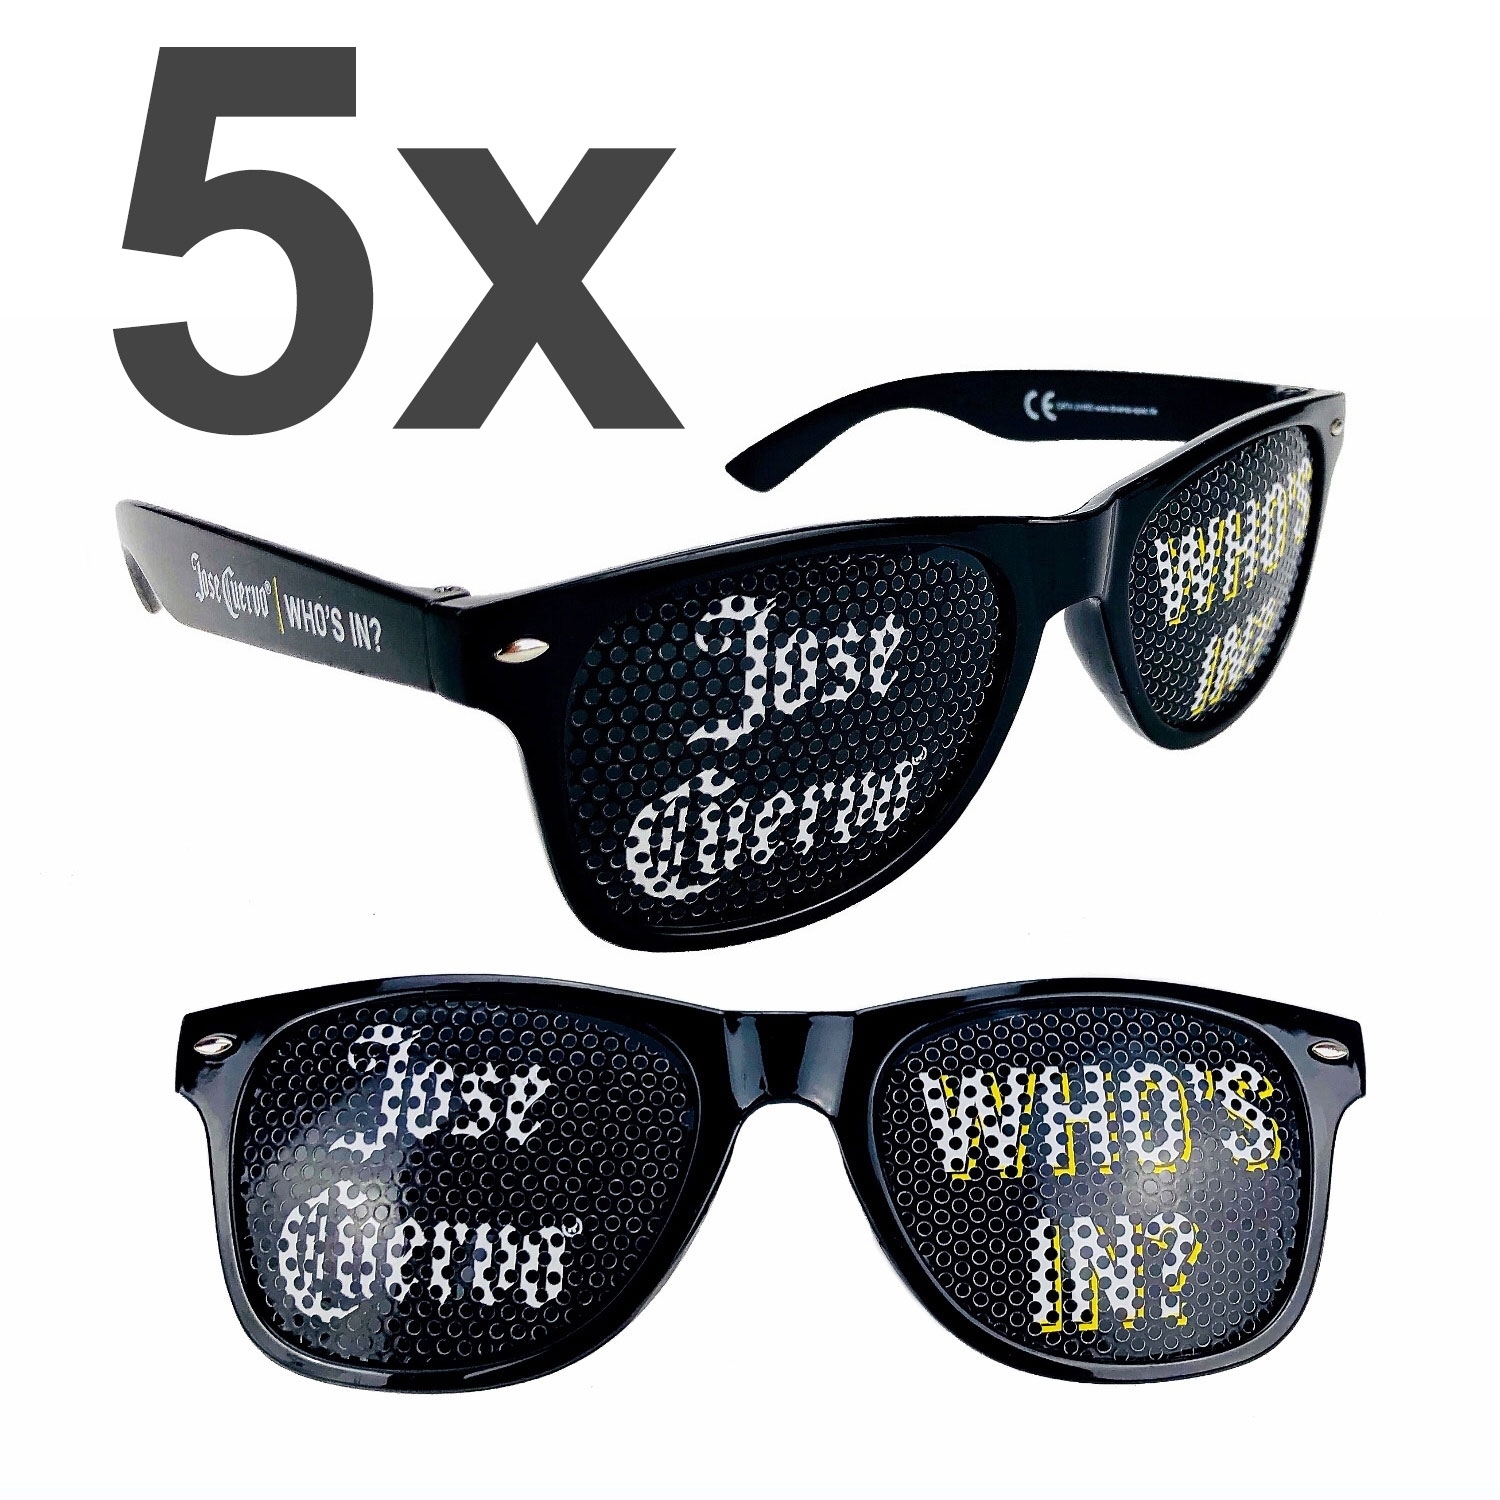 5x Jose Cuervo who s In Sonnenbrille Partybrille Nerd Brille Stückcooleartikel Spaßbrille mit UV-Schutz 